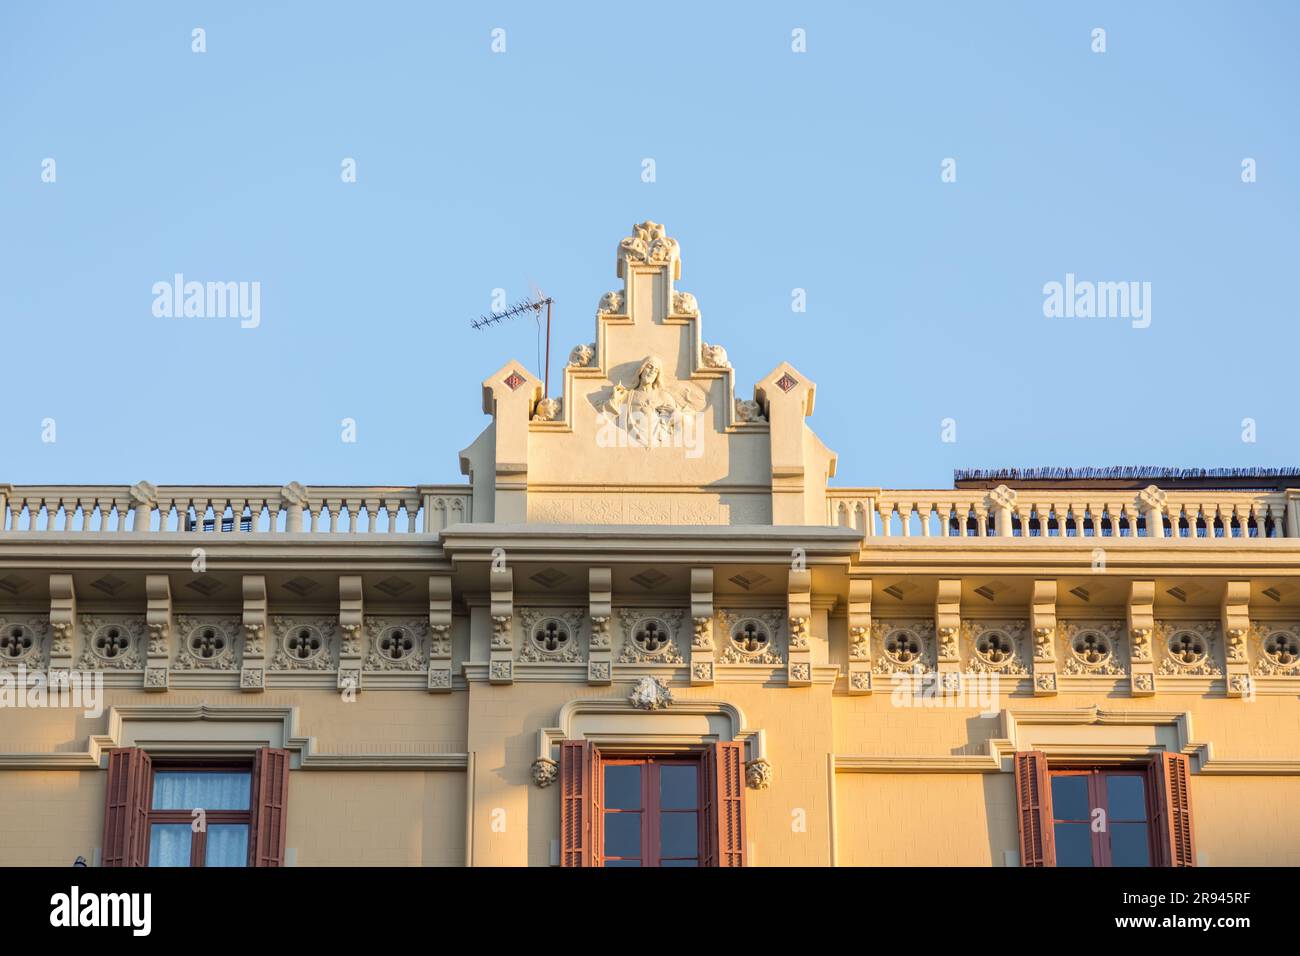 Barcelone, Espagne - 10 FÉVRIER 2022 : détail architectural des bâtiments typiques de Barcelone, Catalogne, Espagne. Banque D'Images